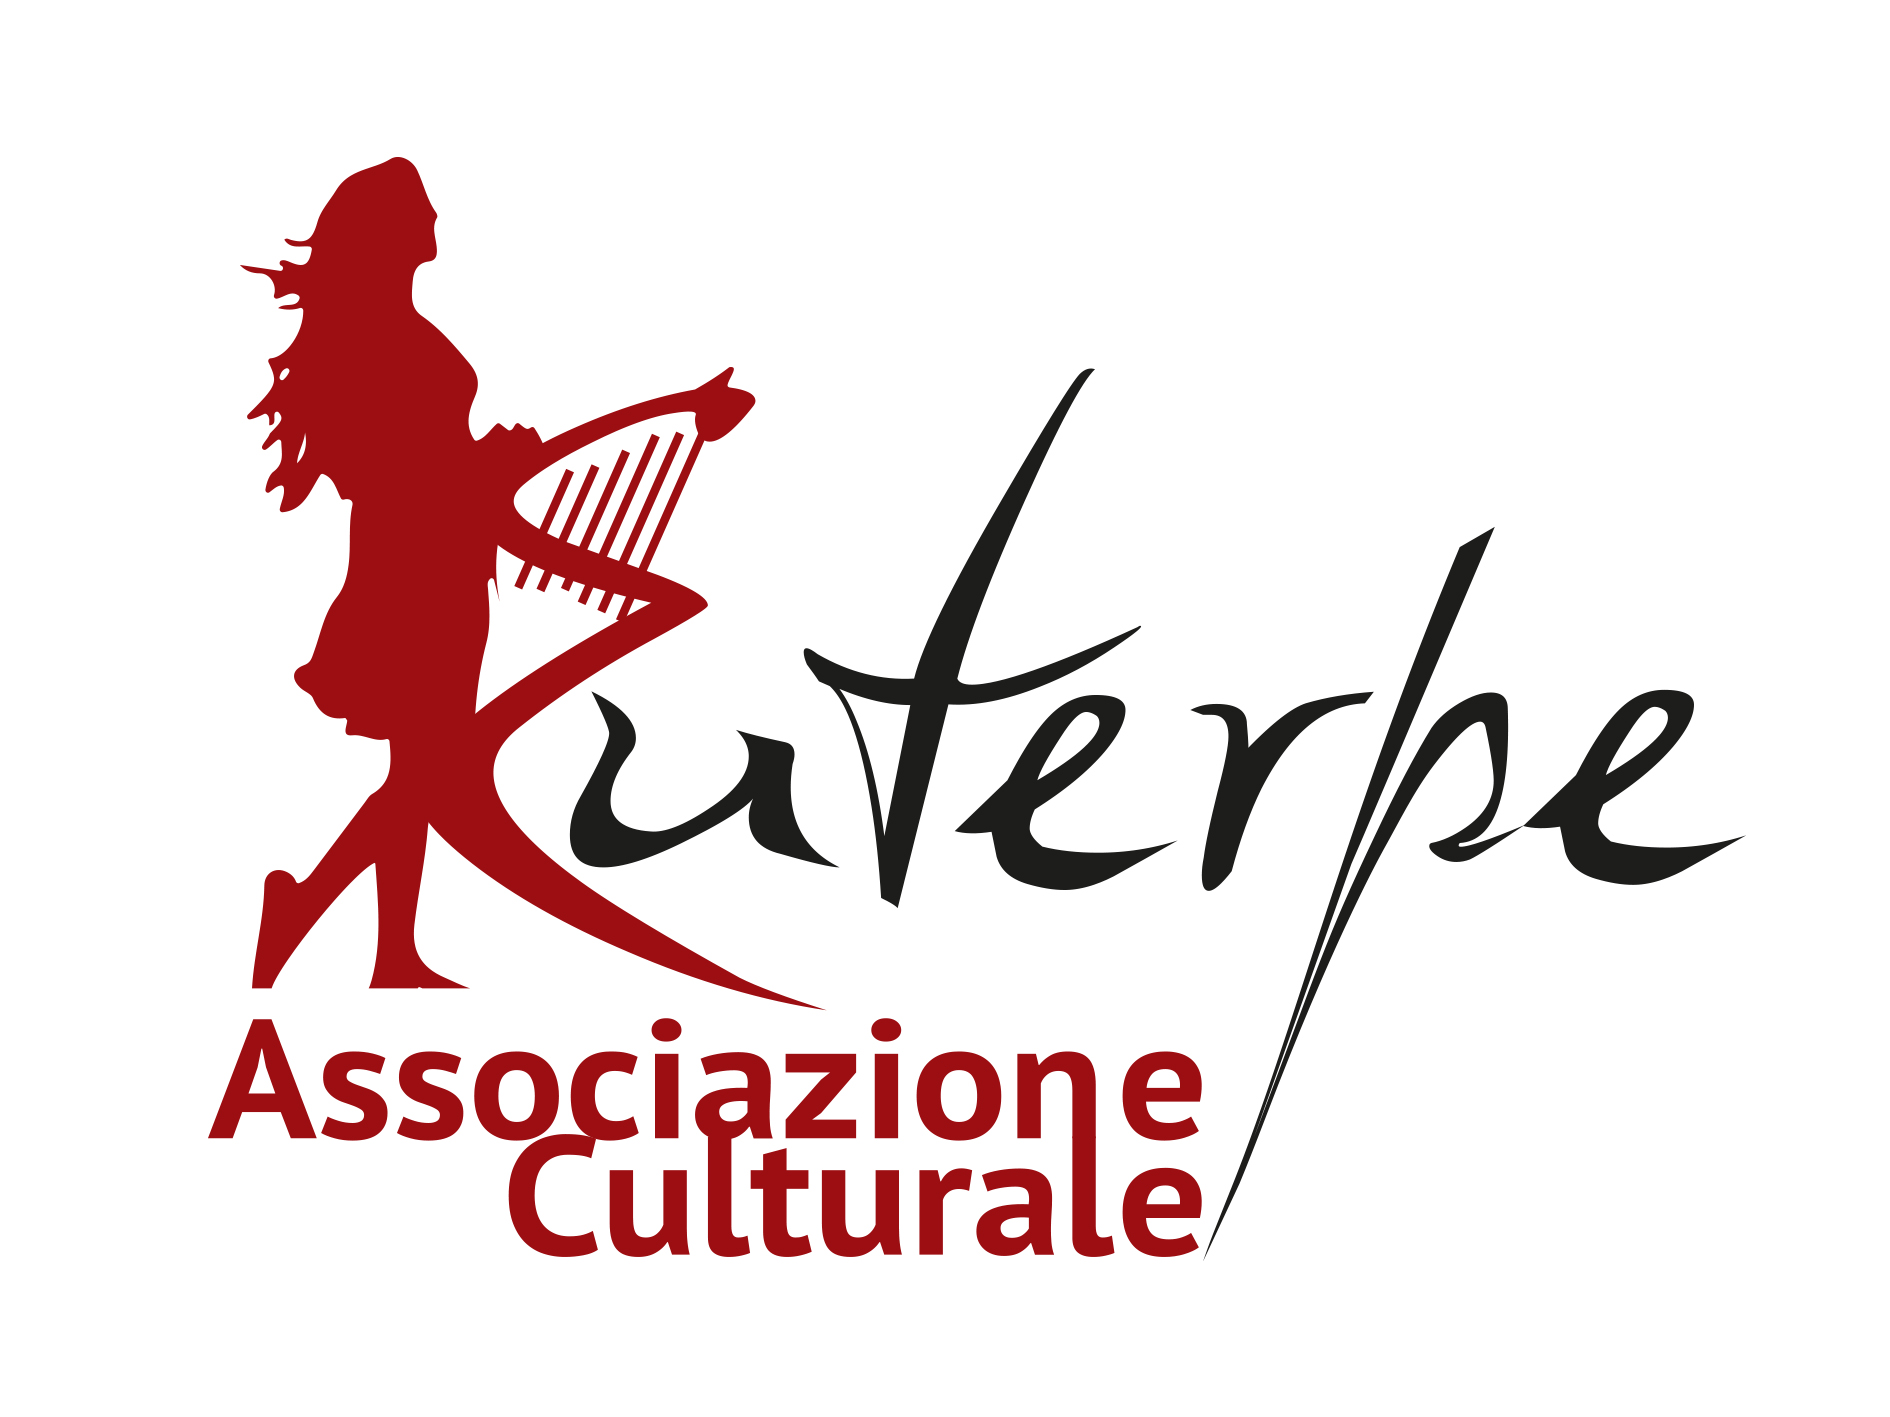 Associazione Culturale Euterpe